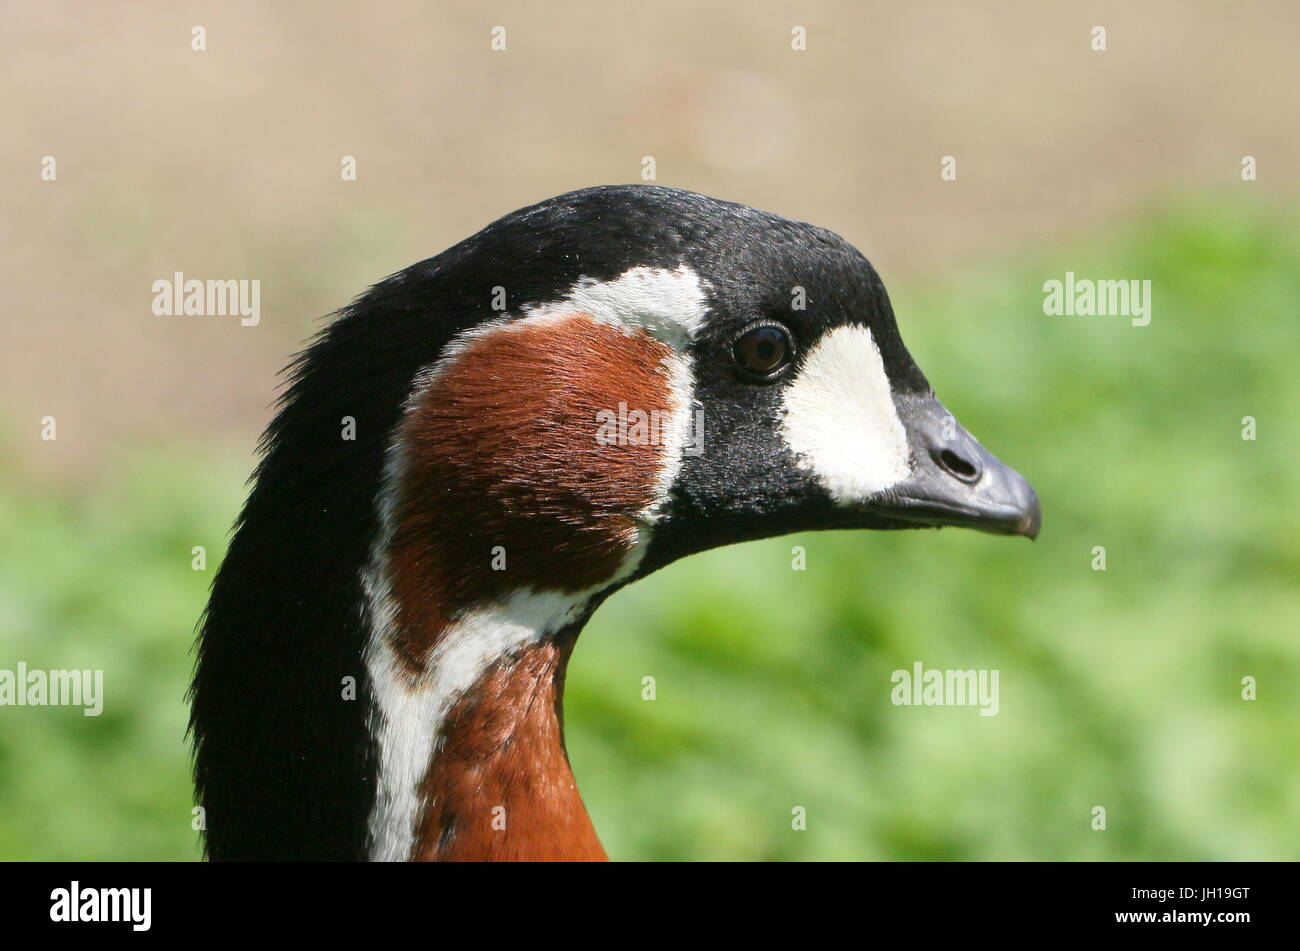 Rojo euroasiático-breasted Goose (Branta ruficollis), en primer plano de perfil de la cabeza. Foto de stock